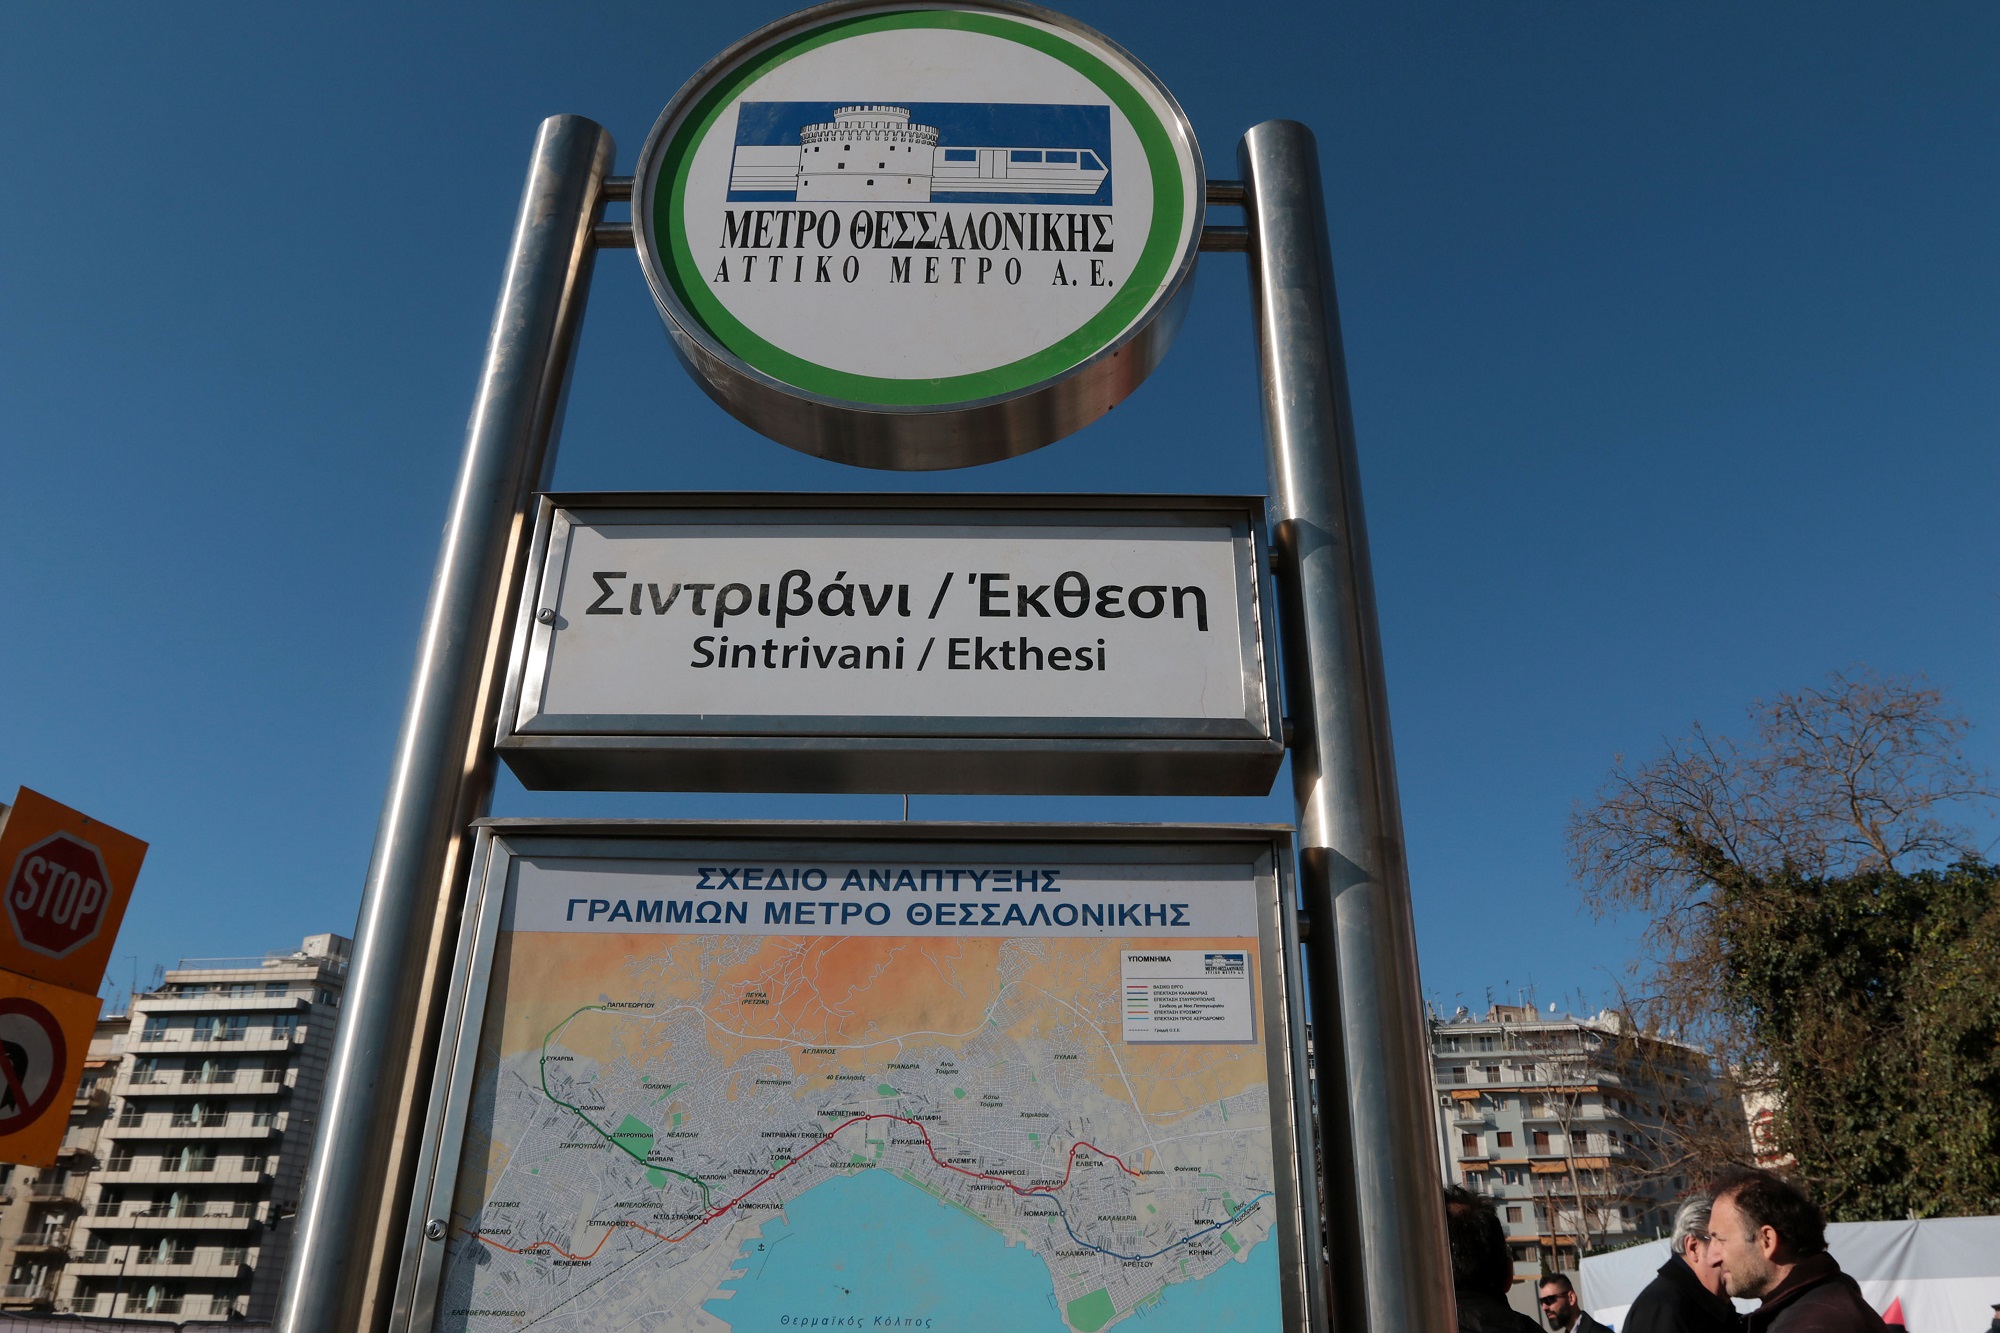 ΥΠΠΟΑ: Μουσείο για τις αρχαιότητες του μετρό Θεσσαλονίκης το κτήριο στο Σταθμό «Σιντριβάνι»